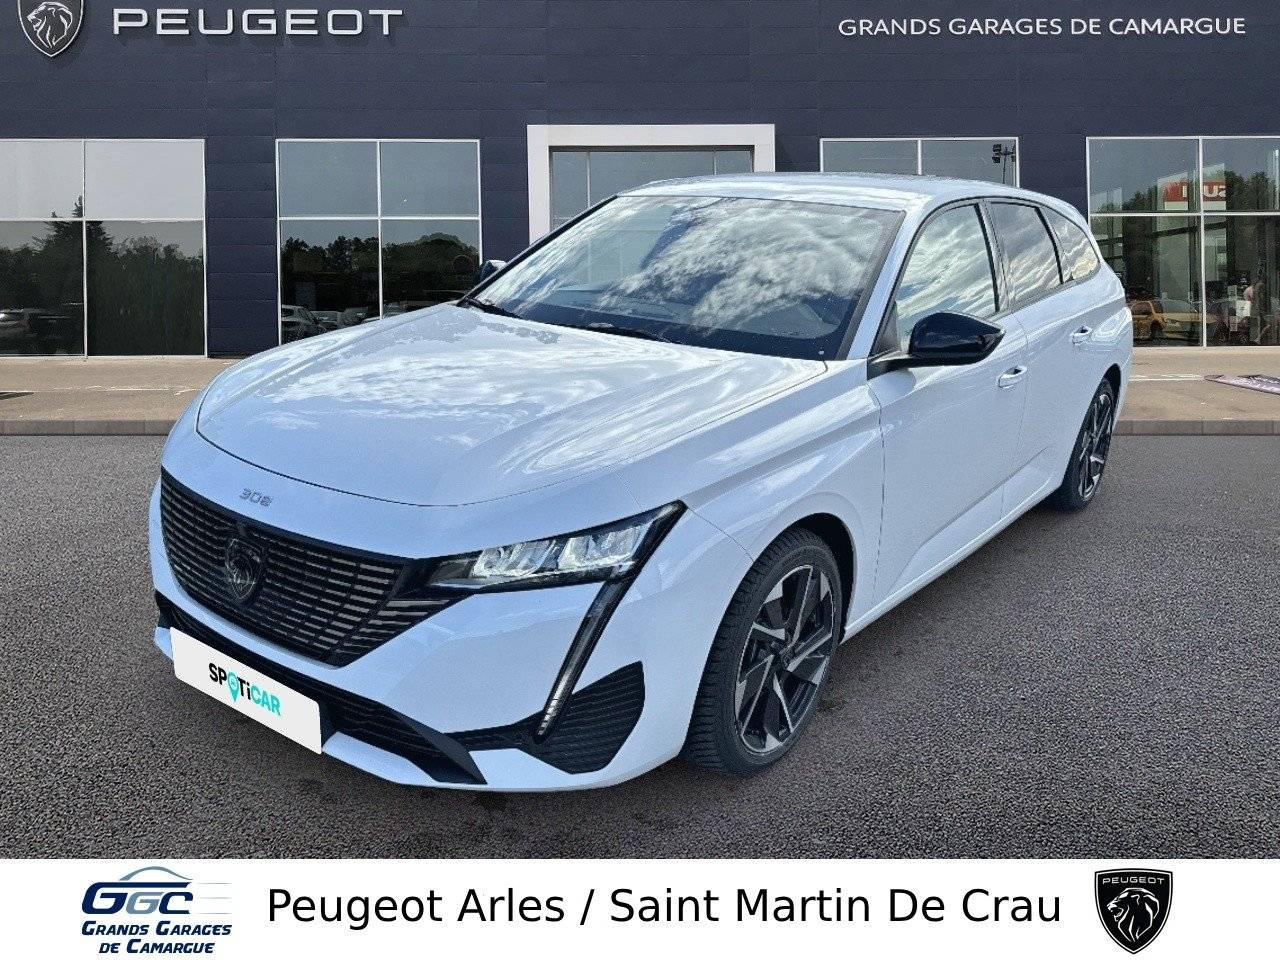 PEUGEOT 308 | 308 PureTech 130ch S&S BVM6 occasion - Peugeot Arles